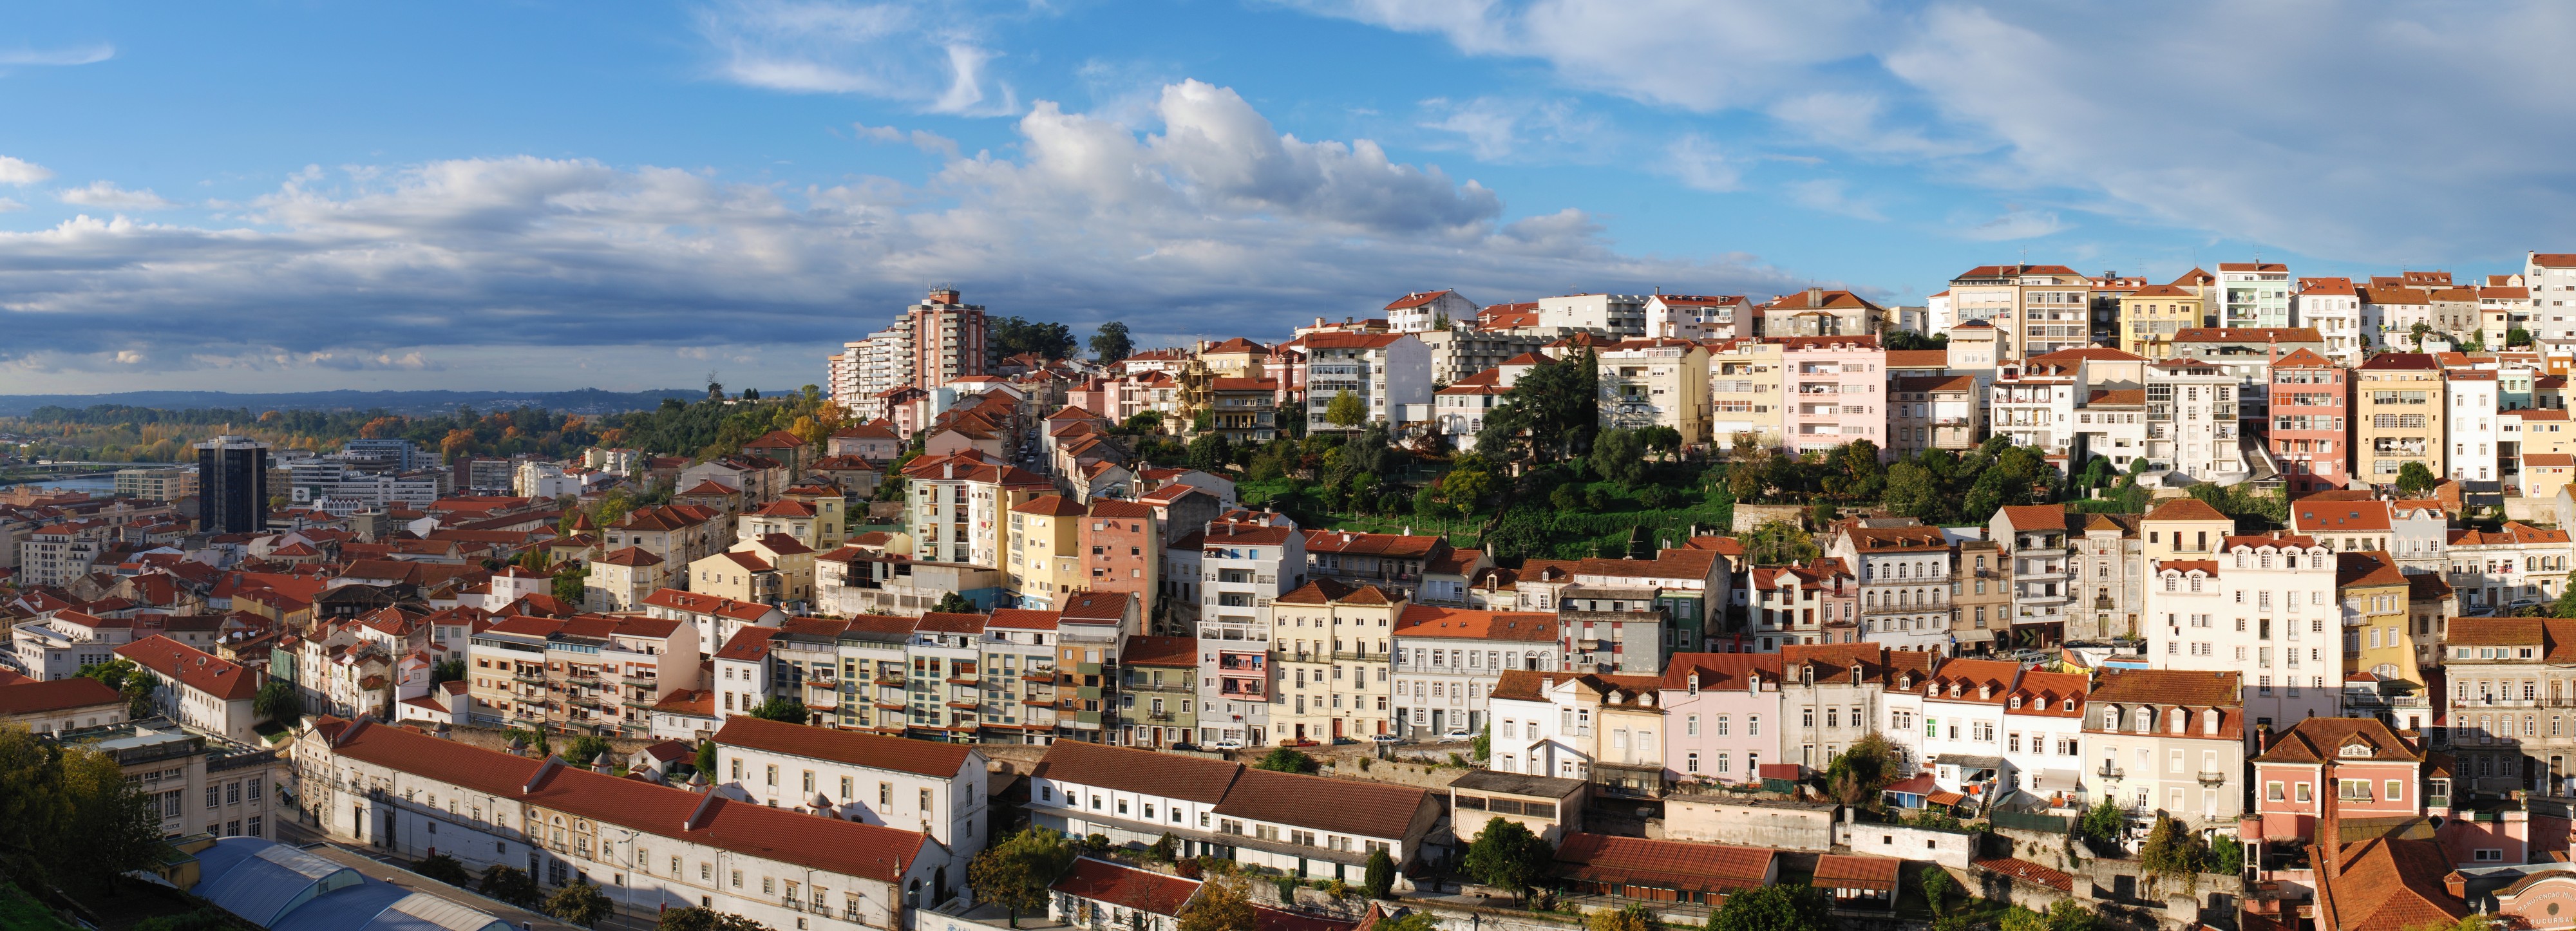 Coimbra November 2012-9